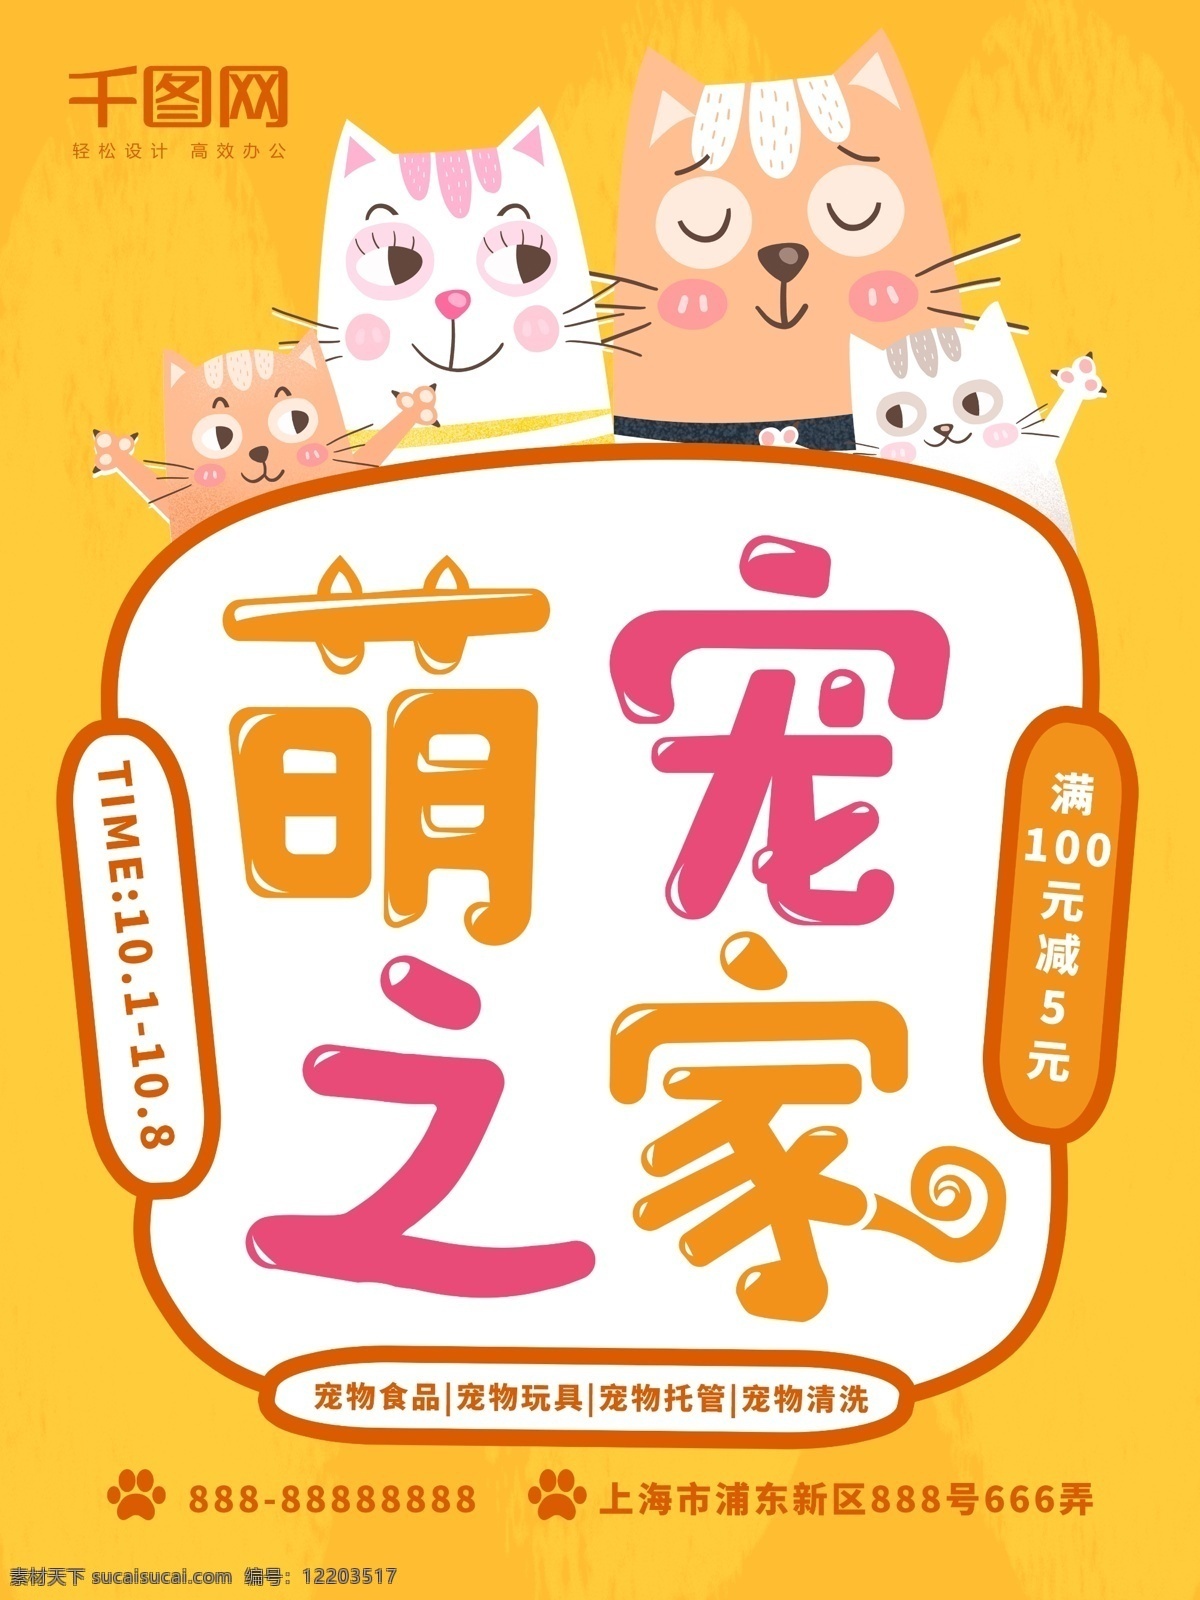 手绘 风格 萌 宠 之家 宠物 促销 海报 黄色 卡通 满减 可爱 边框 猫咪 萌宠 粉色 白色